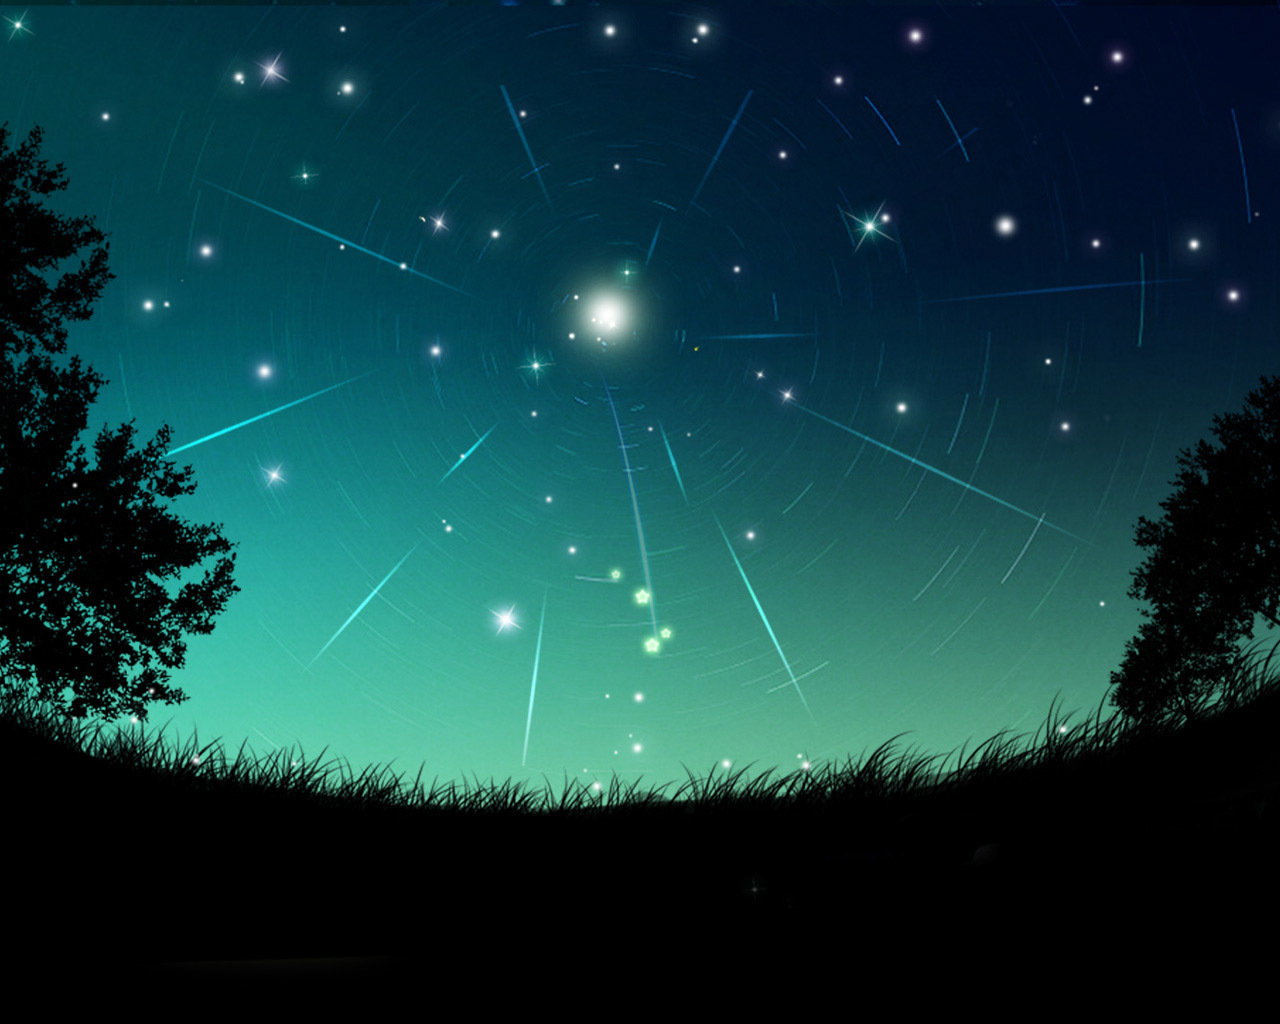 夜空中最亮的星图片 搜狗图片搜索